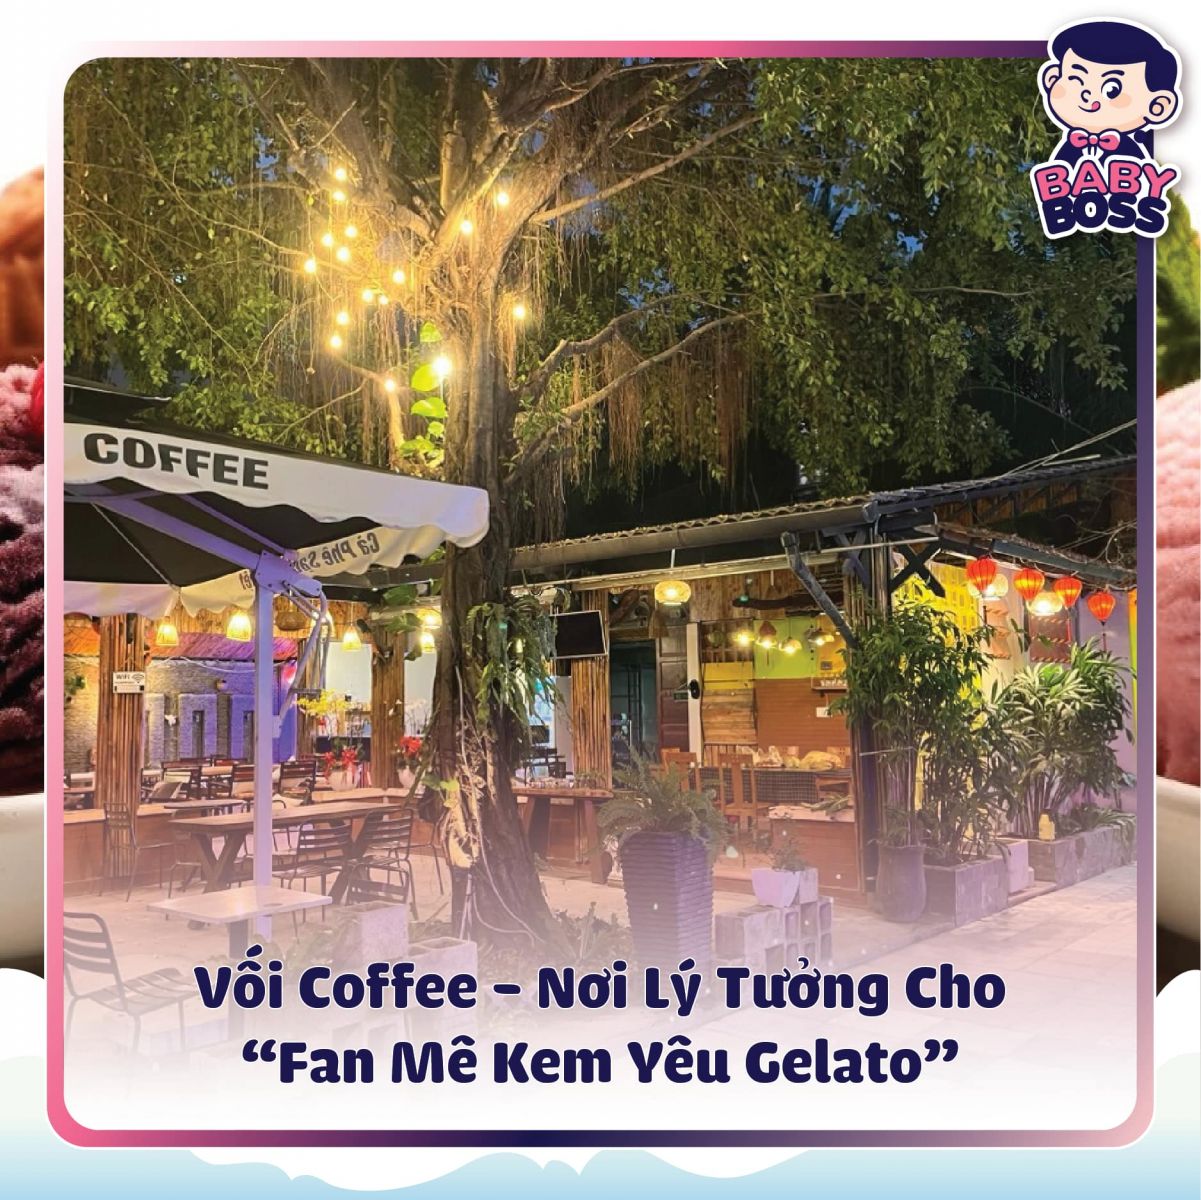 Vối Coffee - địa chỉ ăn kem Gelato Baby Boss tại Thủ Dầu Một